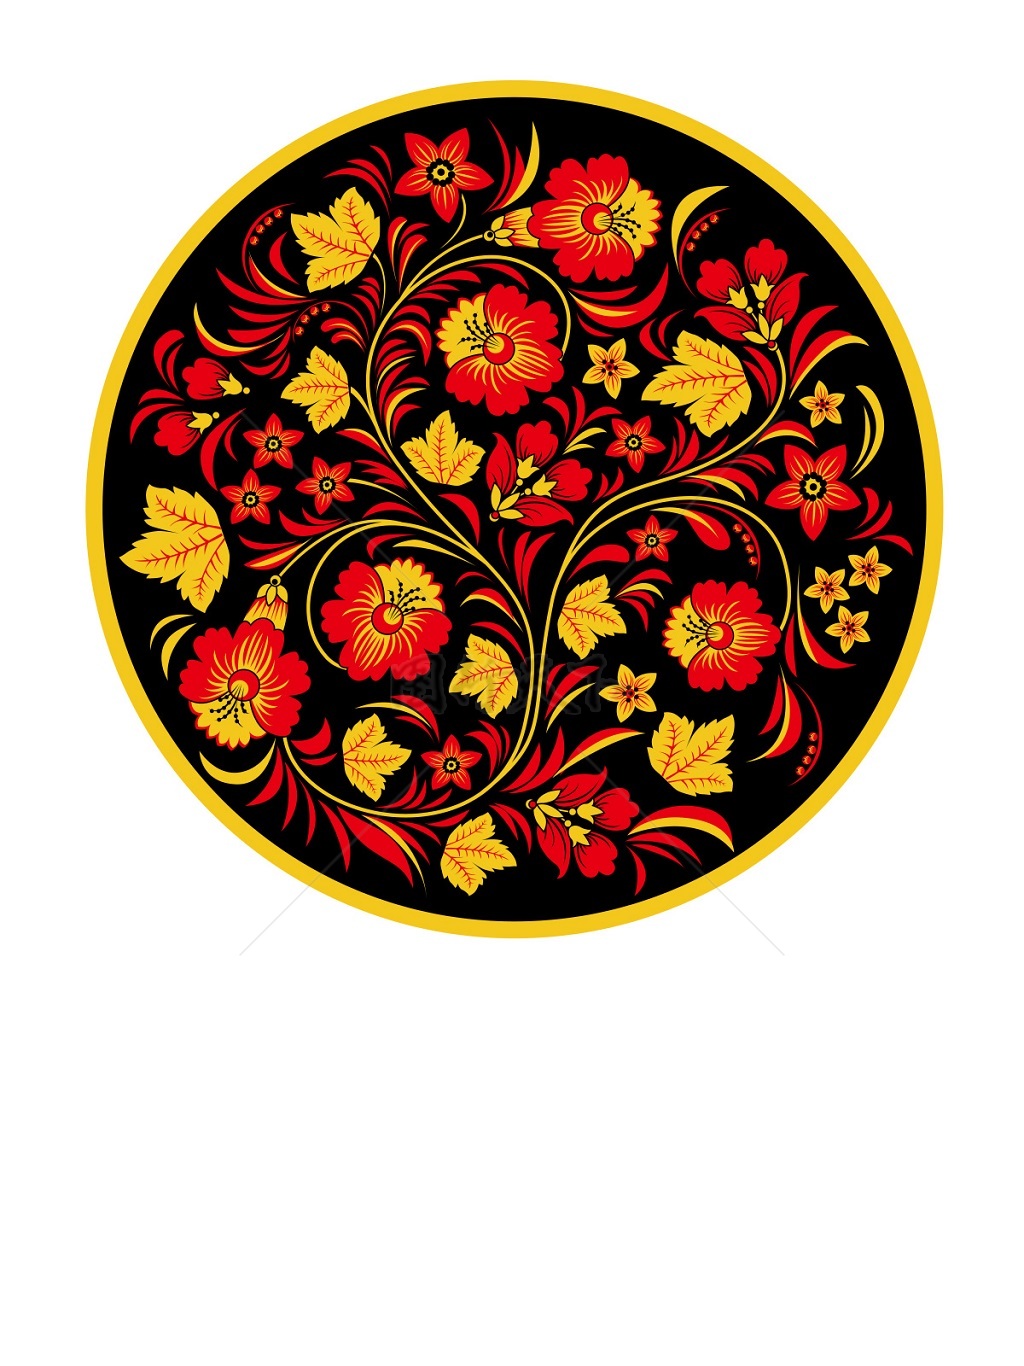  传统 欧式俄式 圆形花卉图案背景贴图 黑底红黄花满屏